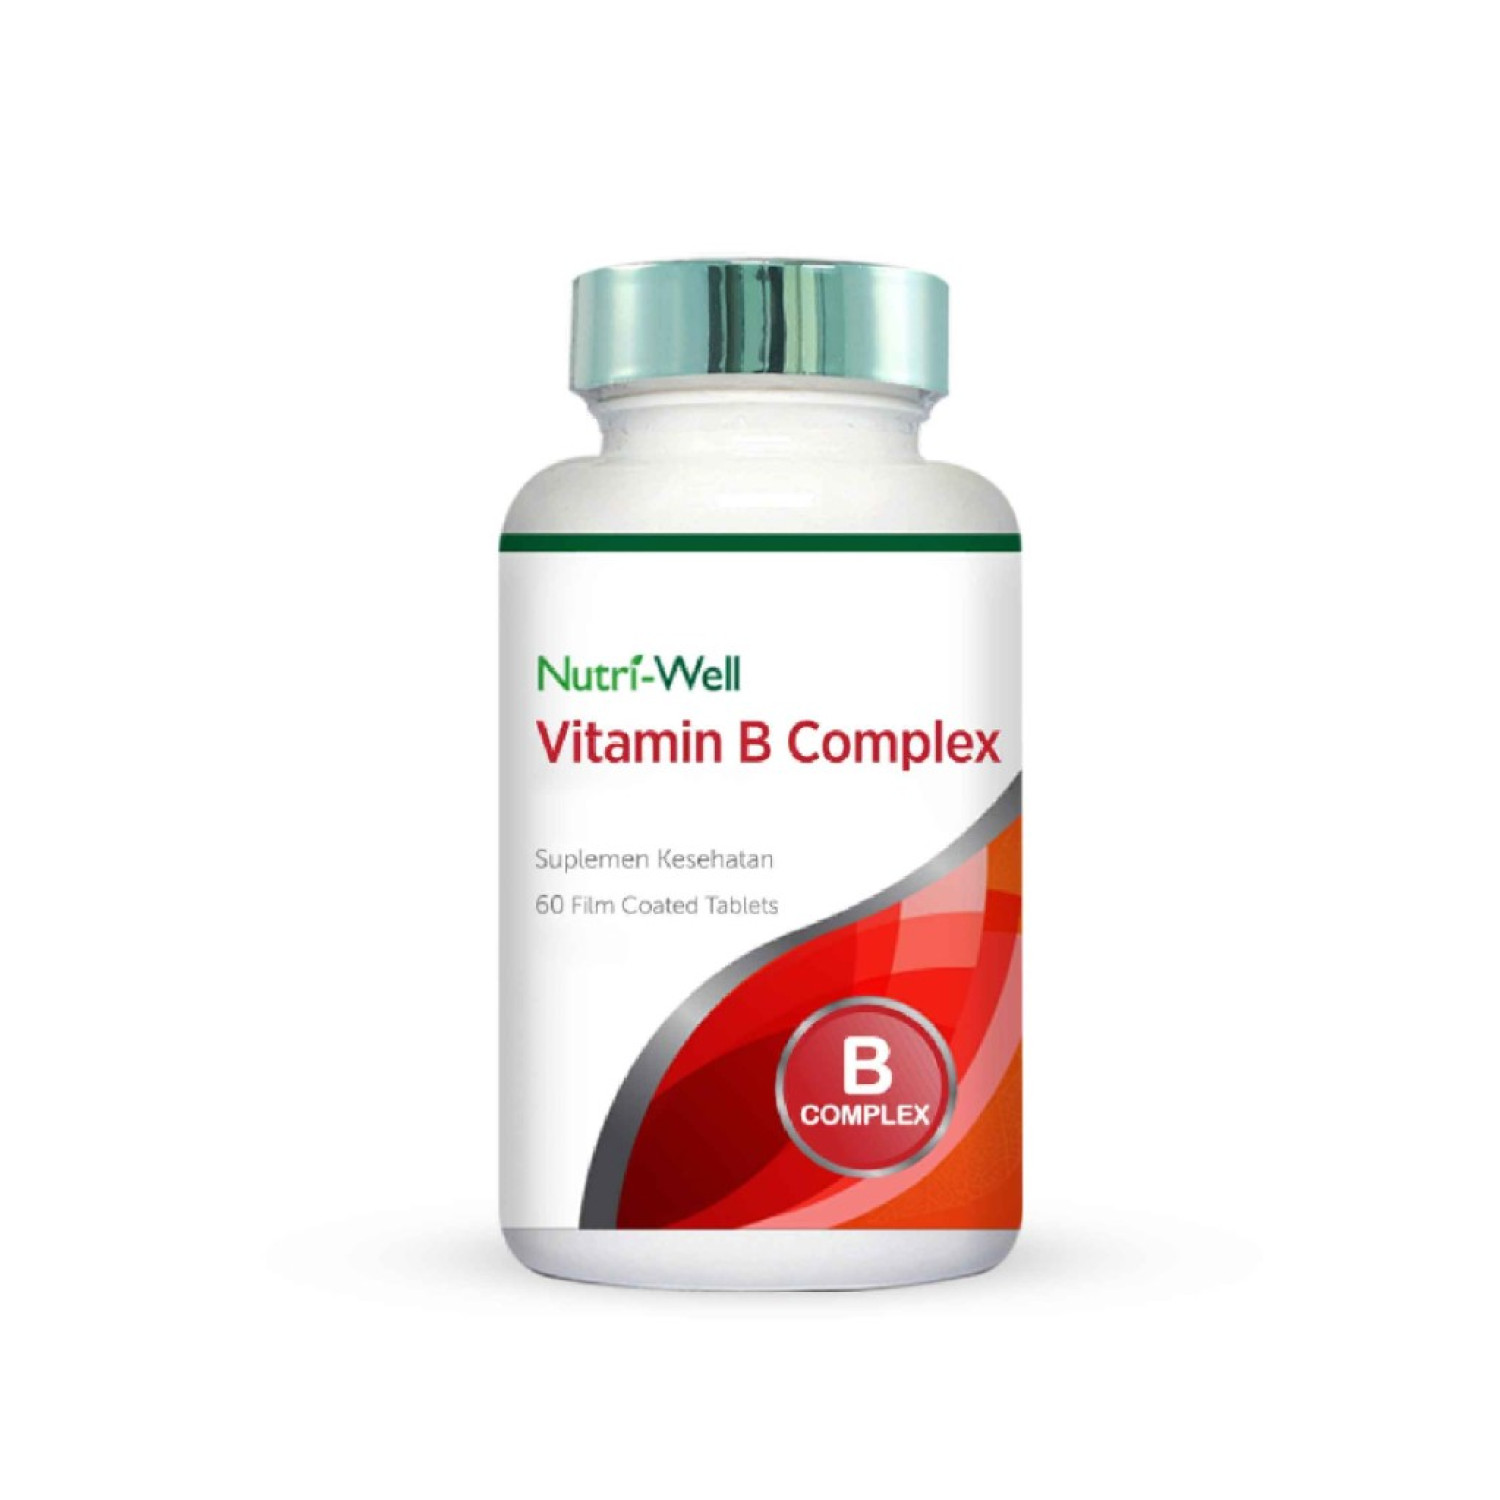 nutriwell-vitamin-b-complex-60-tablet-660e24fc0a7f7.jpeg